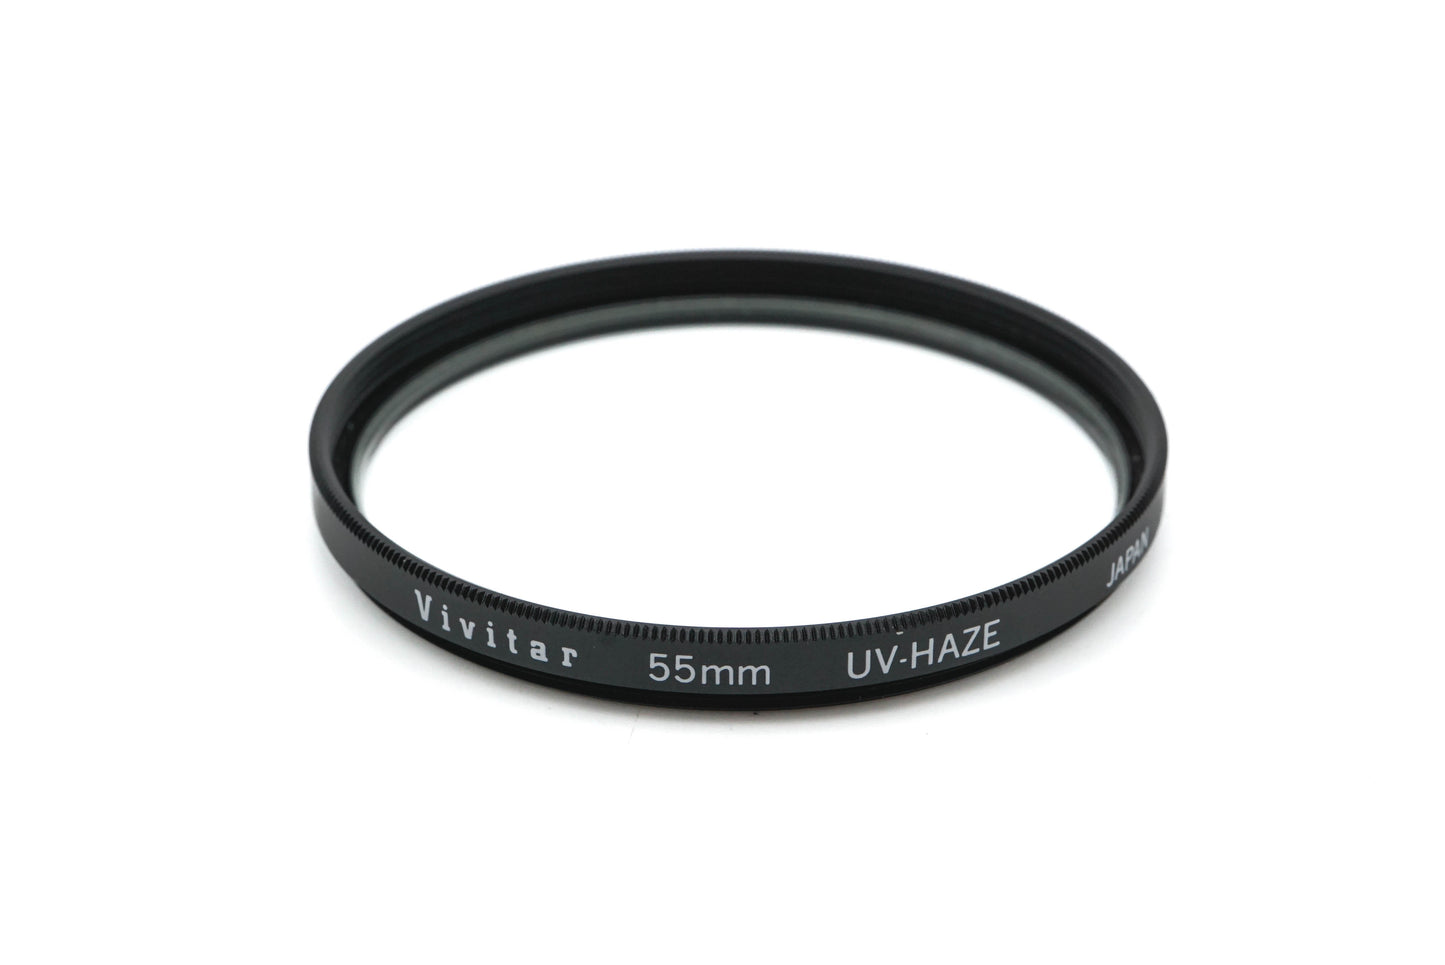 Vivitar 55mm UV-Haze Filter - Accessory